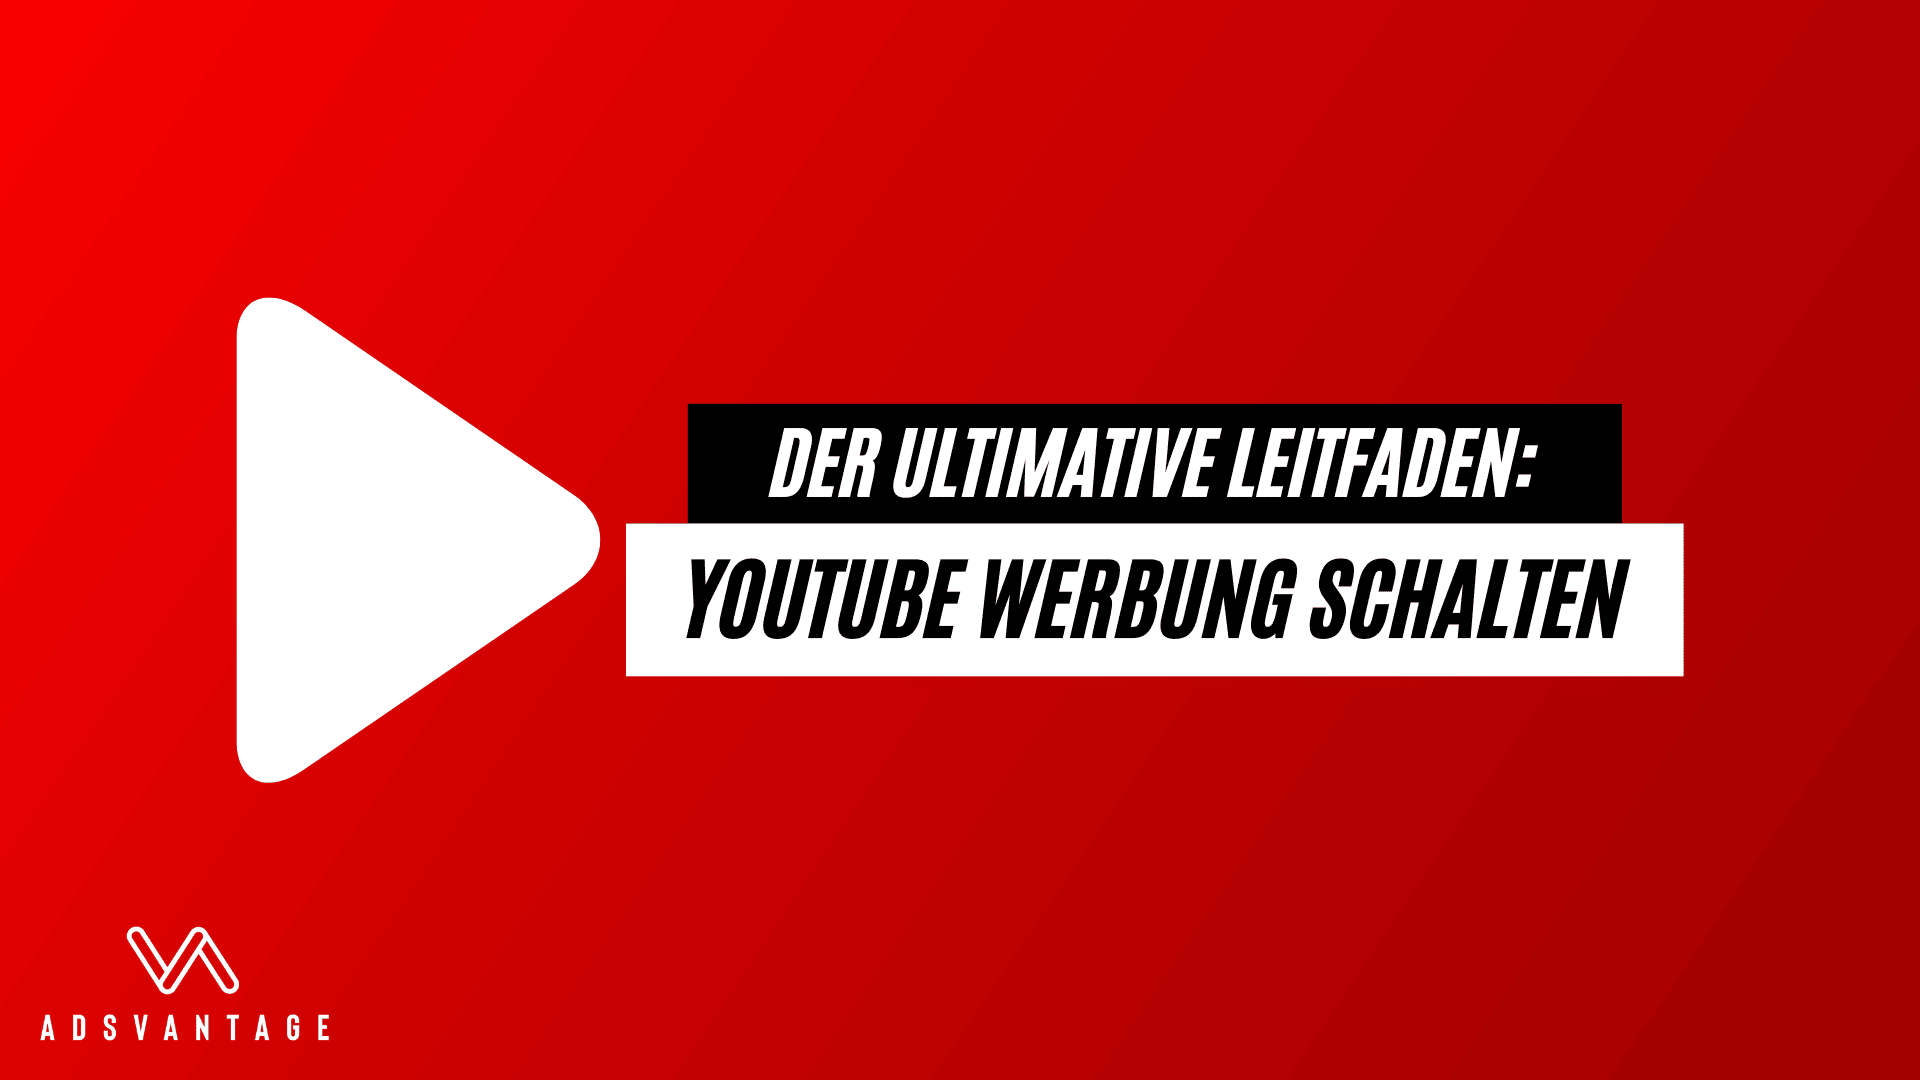 YouTube Werbung schalten